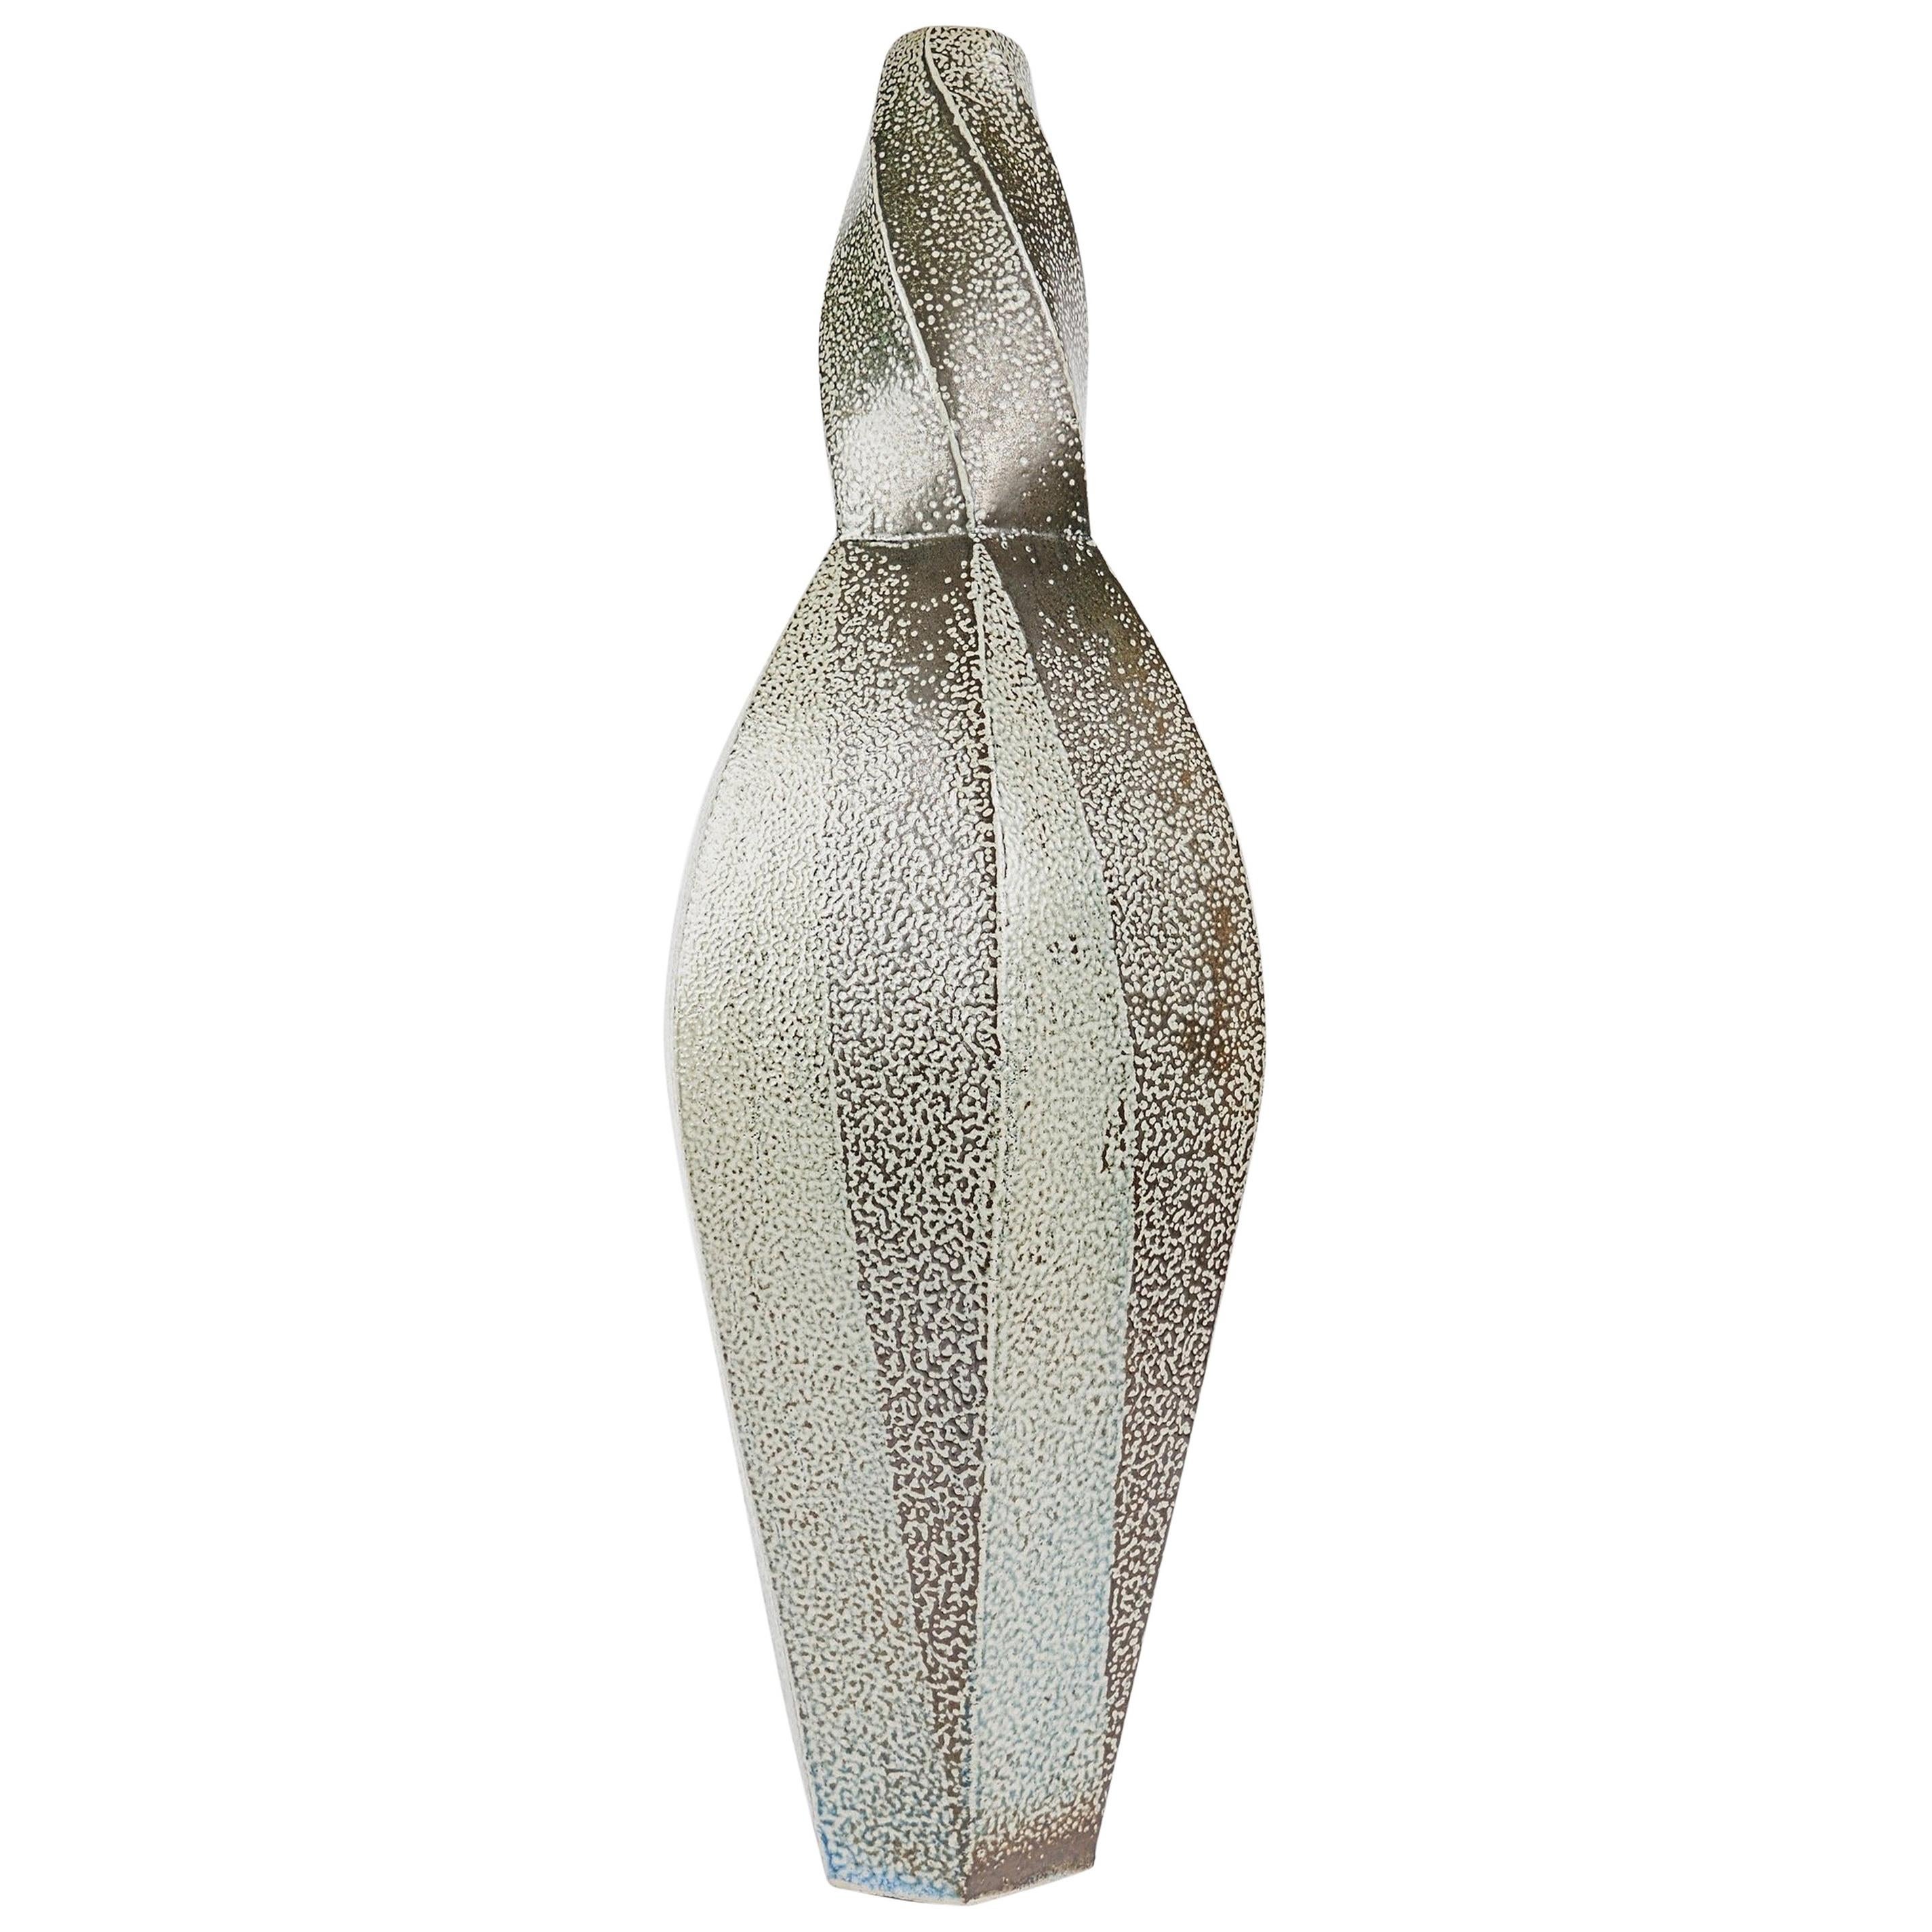 Aage Birck, Twisting Ceramic Vase, Denmark, 2012 For Sale